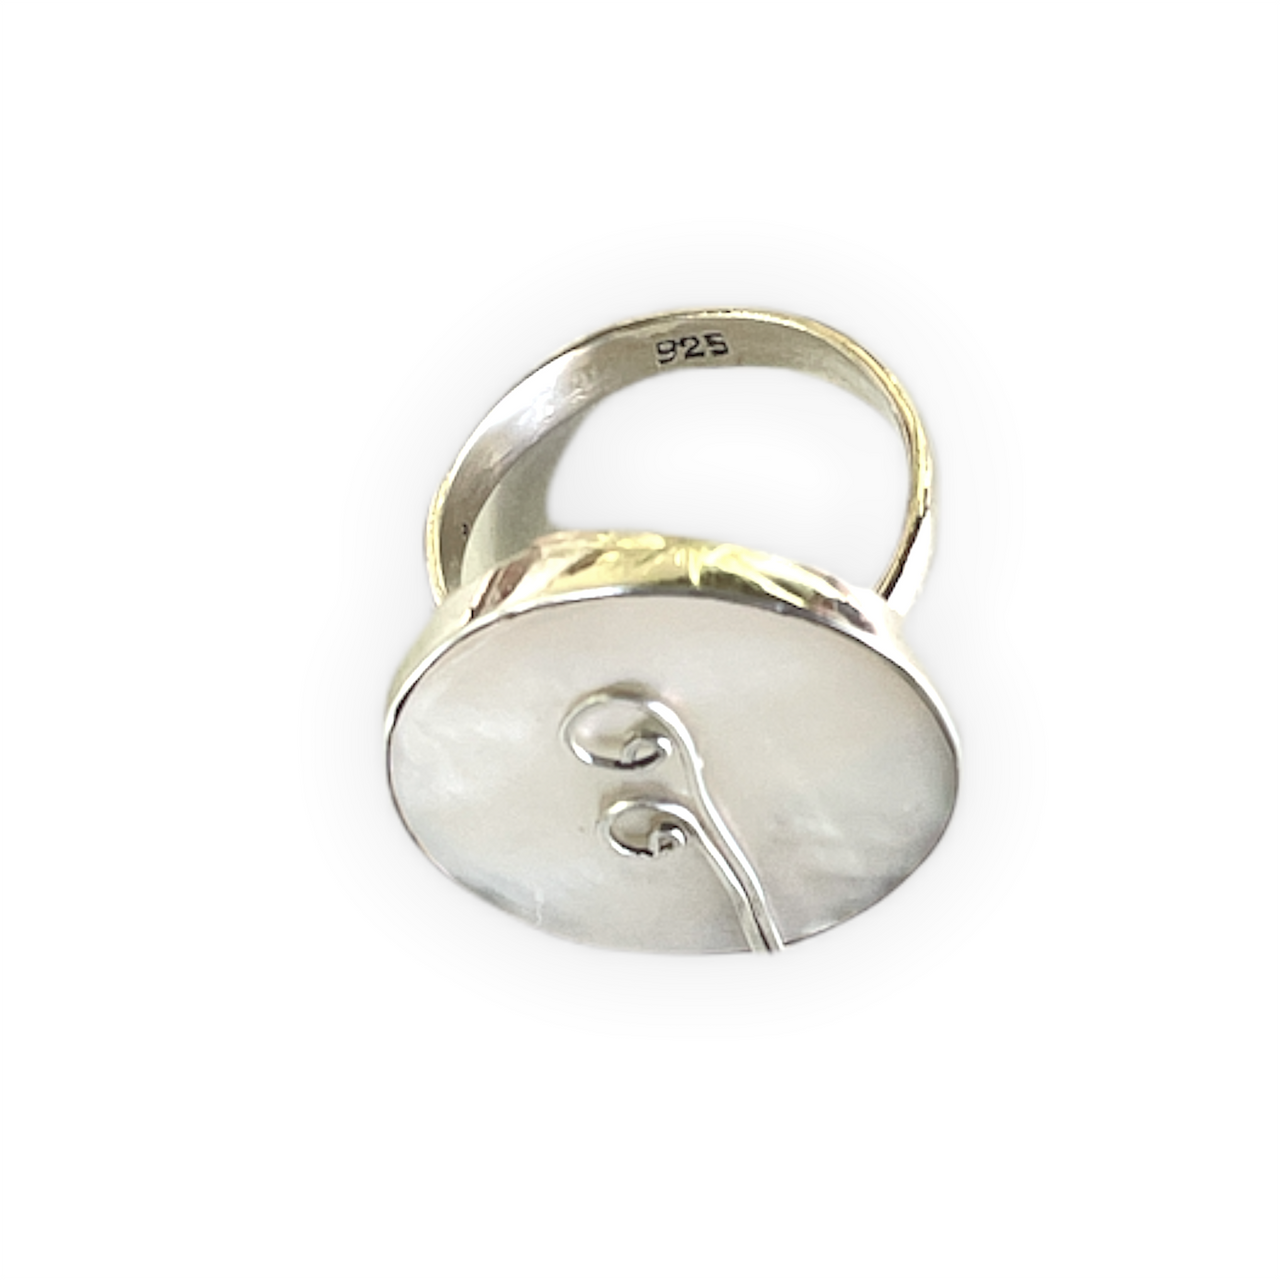 Espectacular anillo de plata de ley con Nácar. Este anillo es ajustable lo que lo hace perfecto. Además es super combinable con tu look favorito. Superior